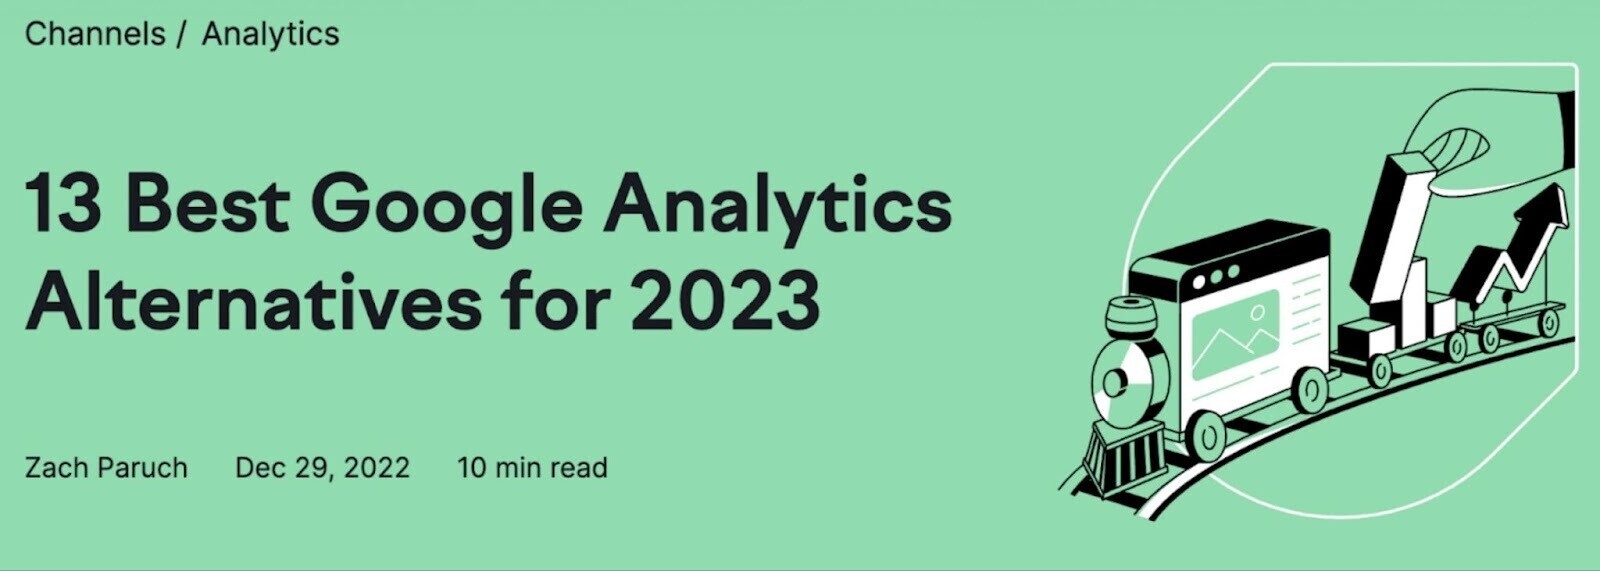 Titre du blog « 13 meilleures alternatives Google Analytics pour 2023 »